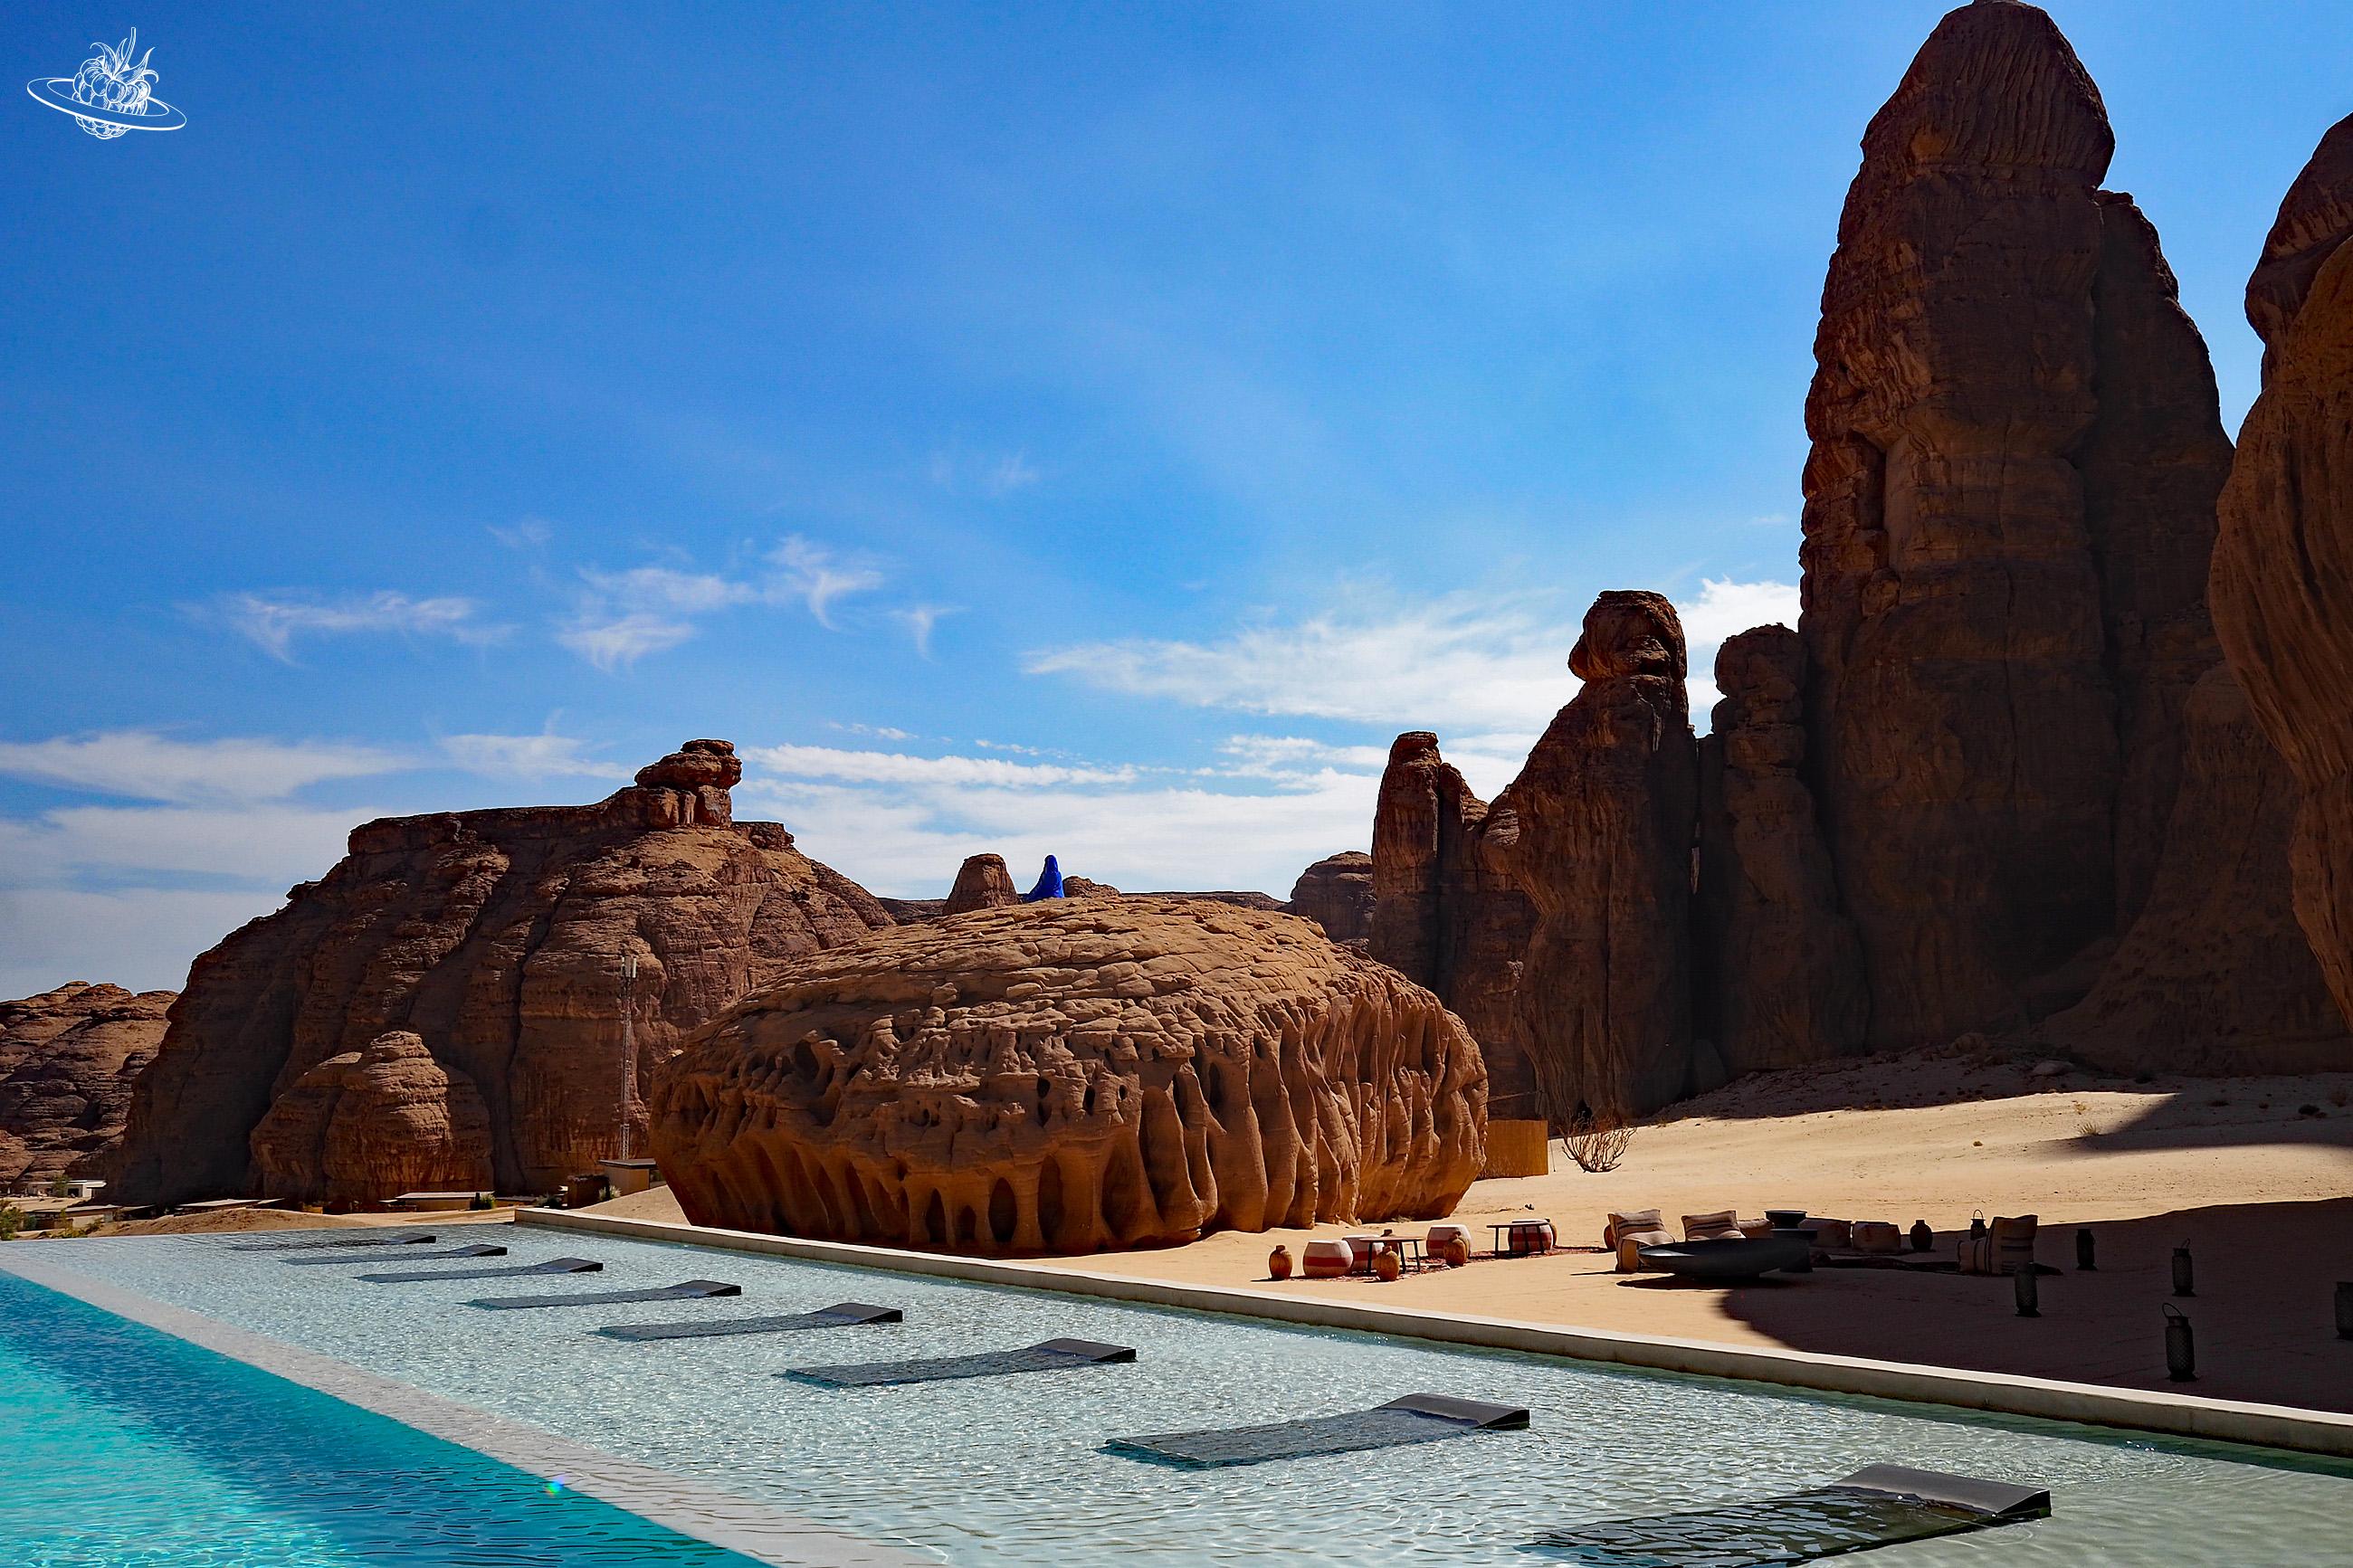 Pool im Vordergrund und im Hintergrund Felsenlandschaft in Wüste